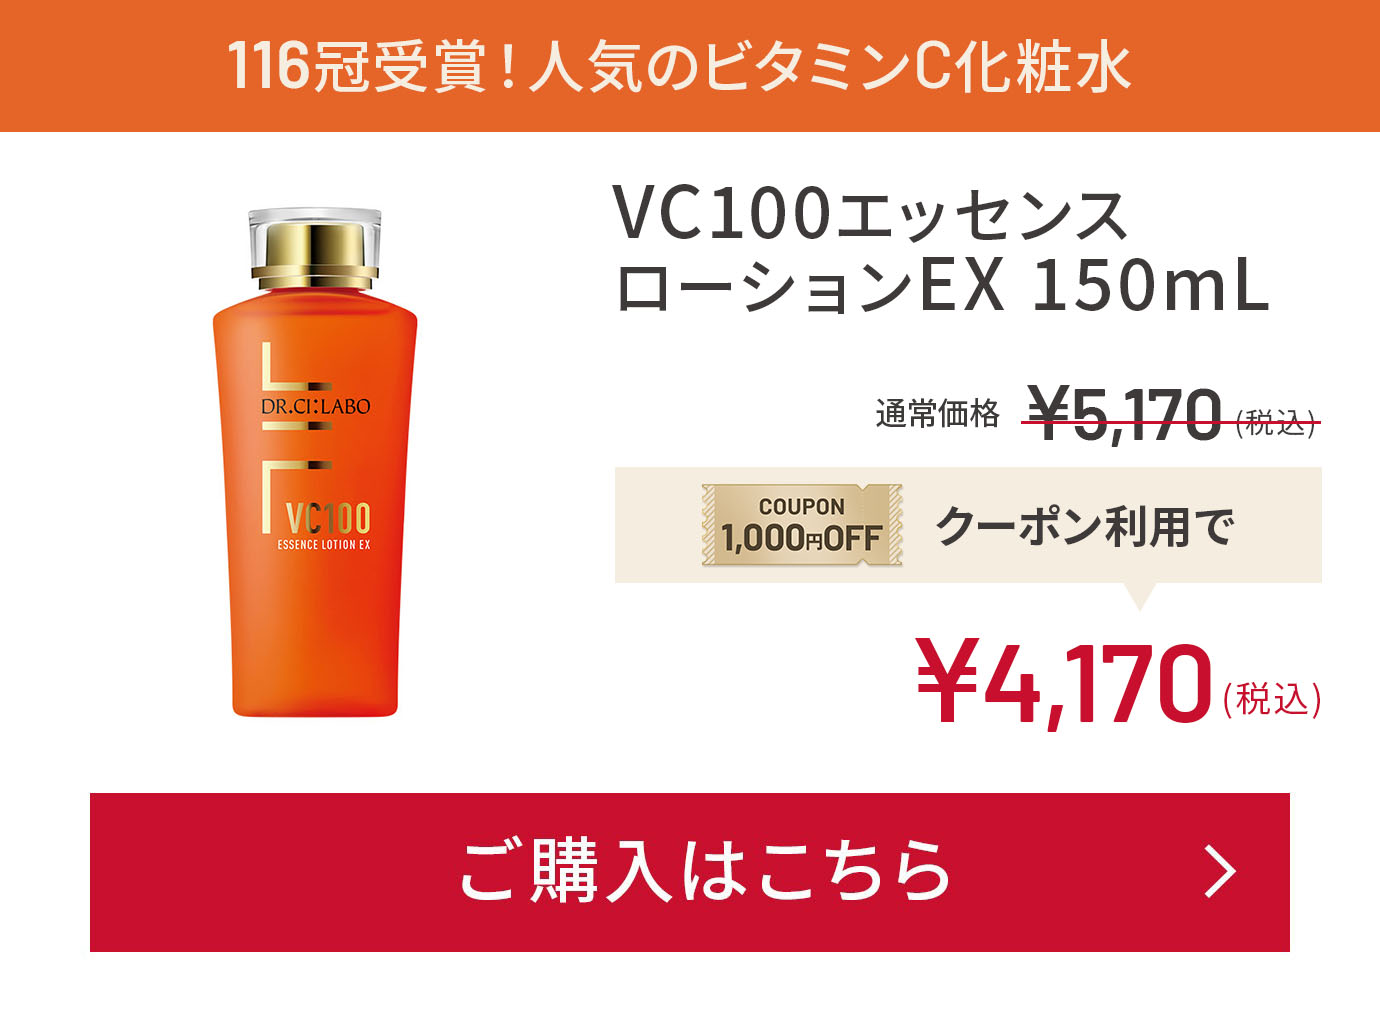 116冠受賞！⼈気のビタミンC化粧⽔ VC100エッセンス ローションEX 150mL